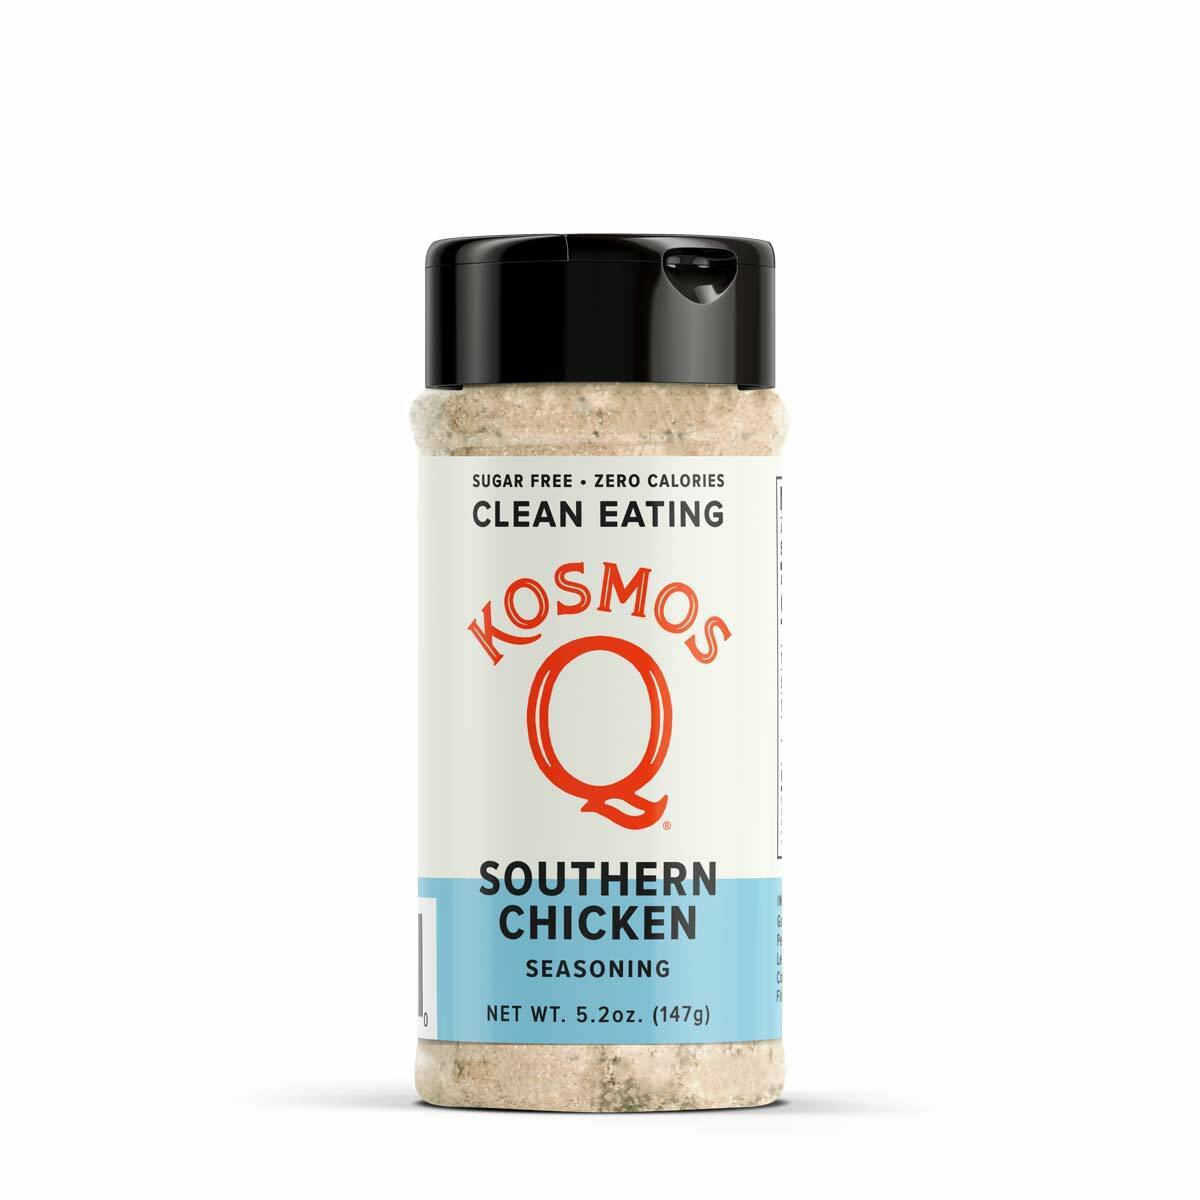 Kosmo's Q Clean Eating Seasonings Southern Chicken - Paleo & Keto Clean Eating Seasoning